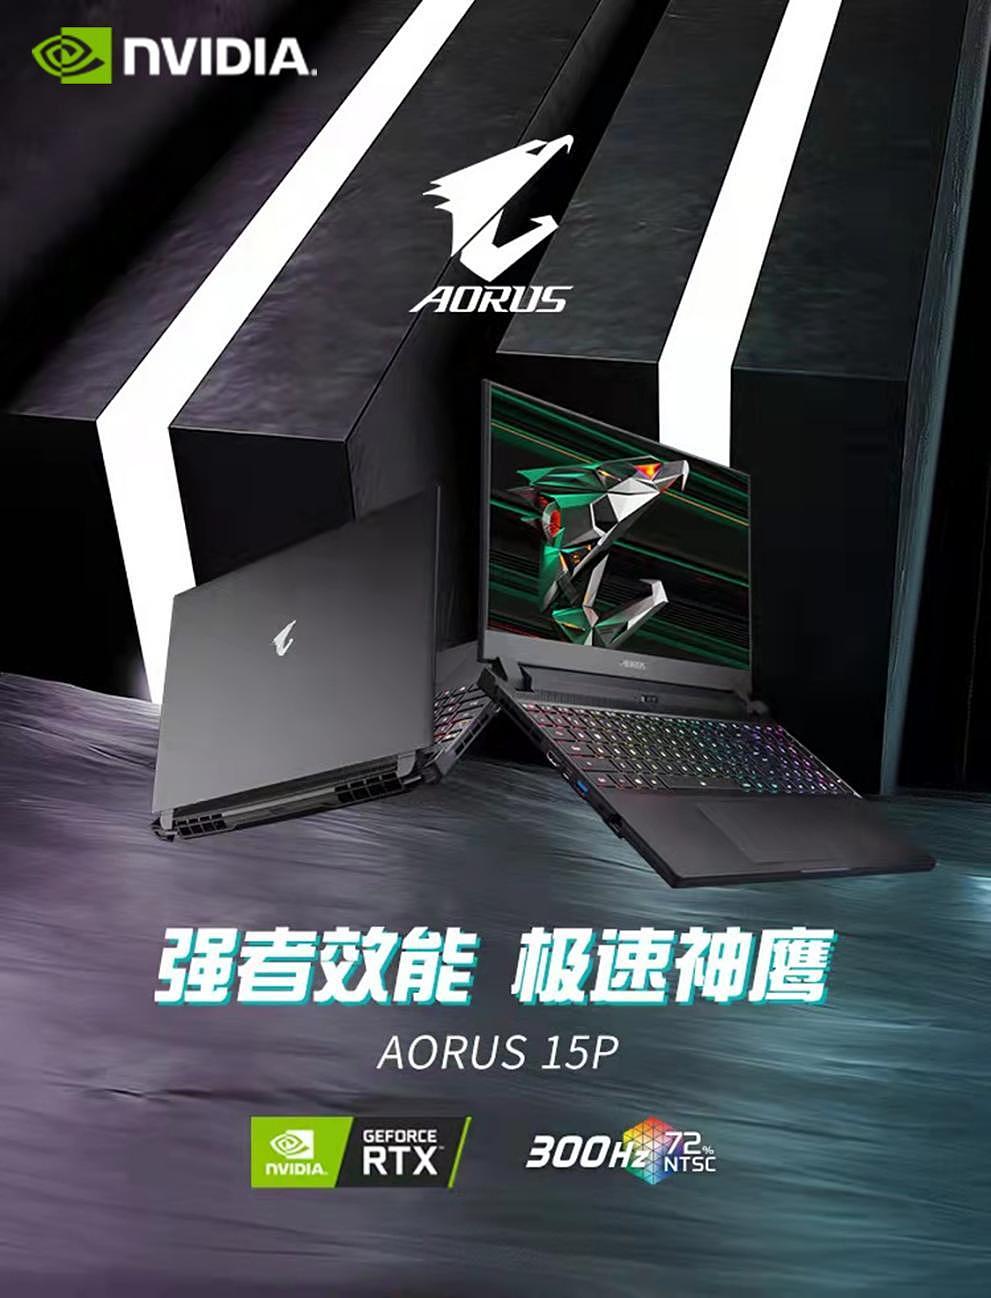 【IT之家评测室】AORUS 15P XD RTX 游戏本评测：130W RTX 3070 加持，跑满 300Hz 电竞屏 - 1